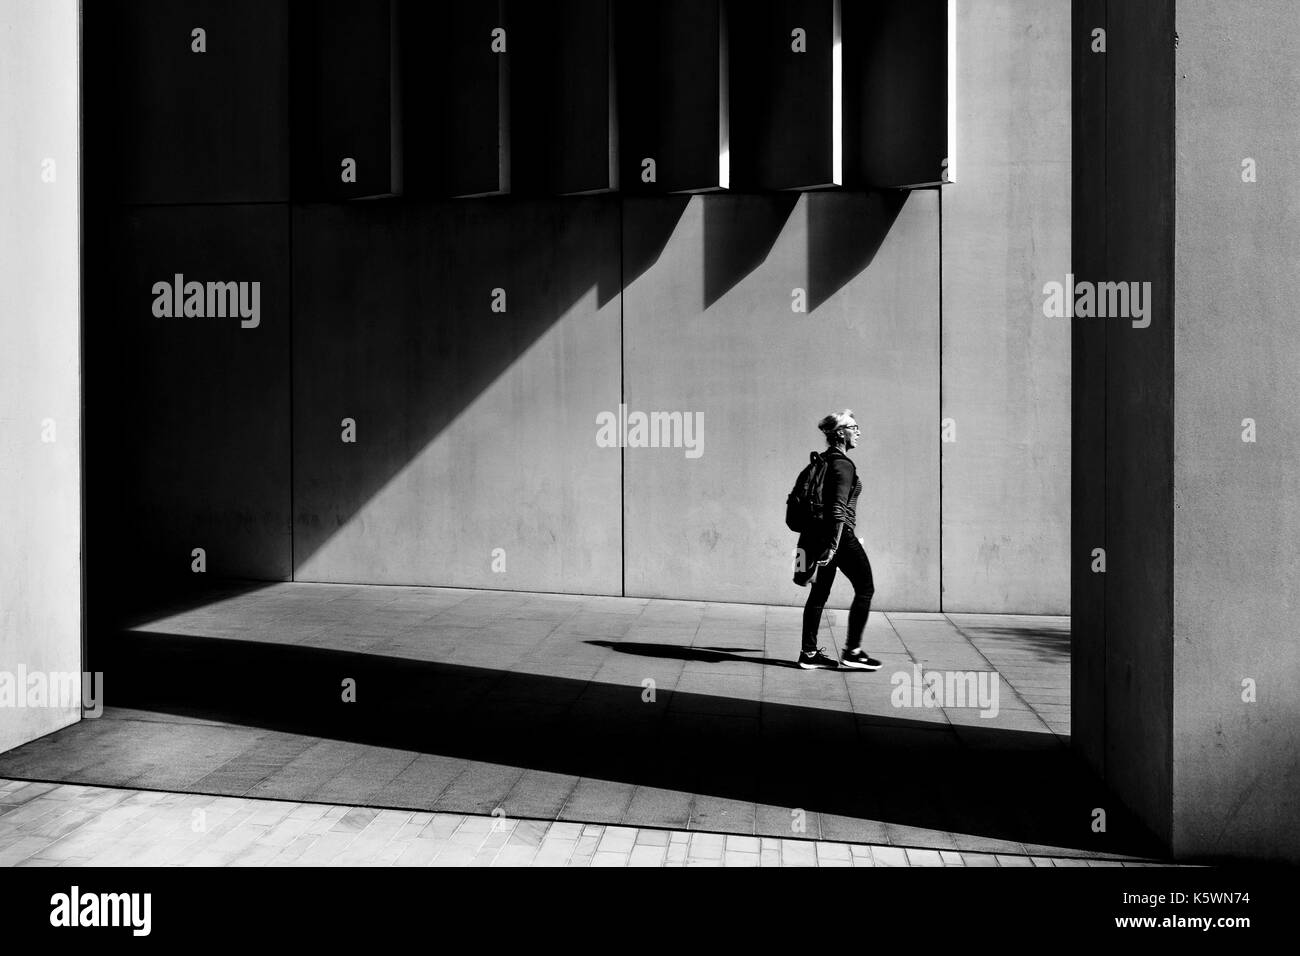 London schwarz und weiß Street Fotografie: Licht und Schatten in der zeitgenössischen urbanen Umgebung, London, UK Stockfoto